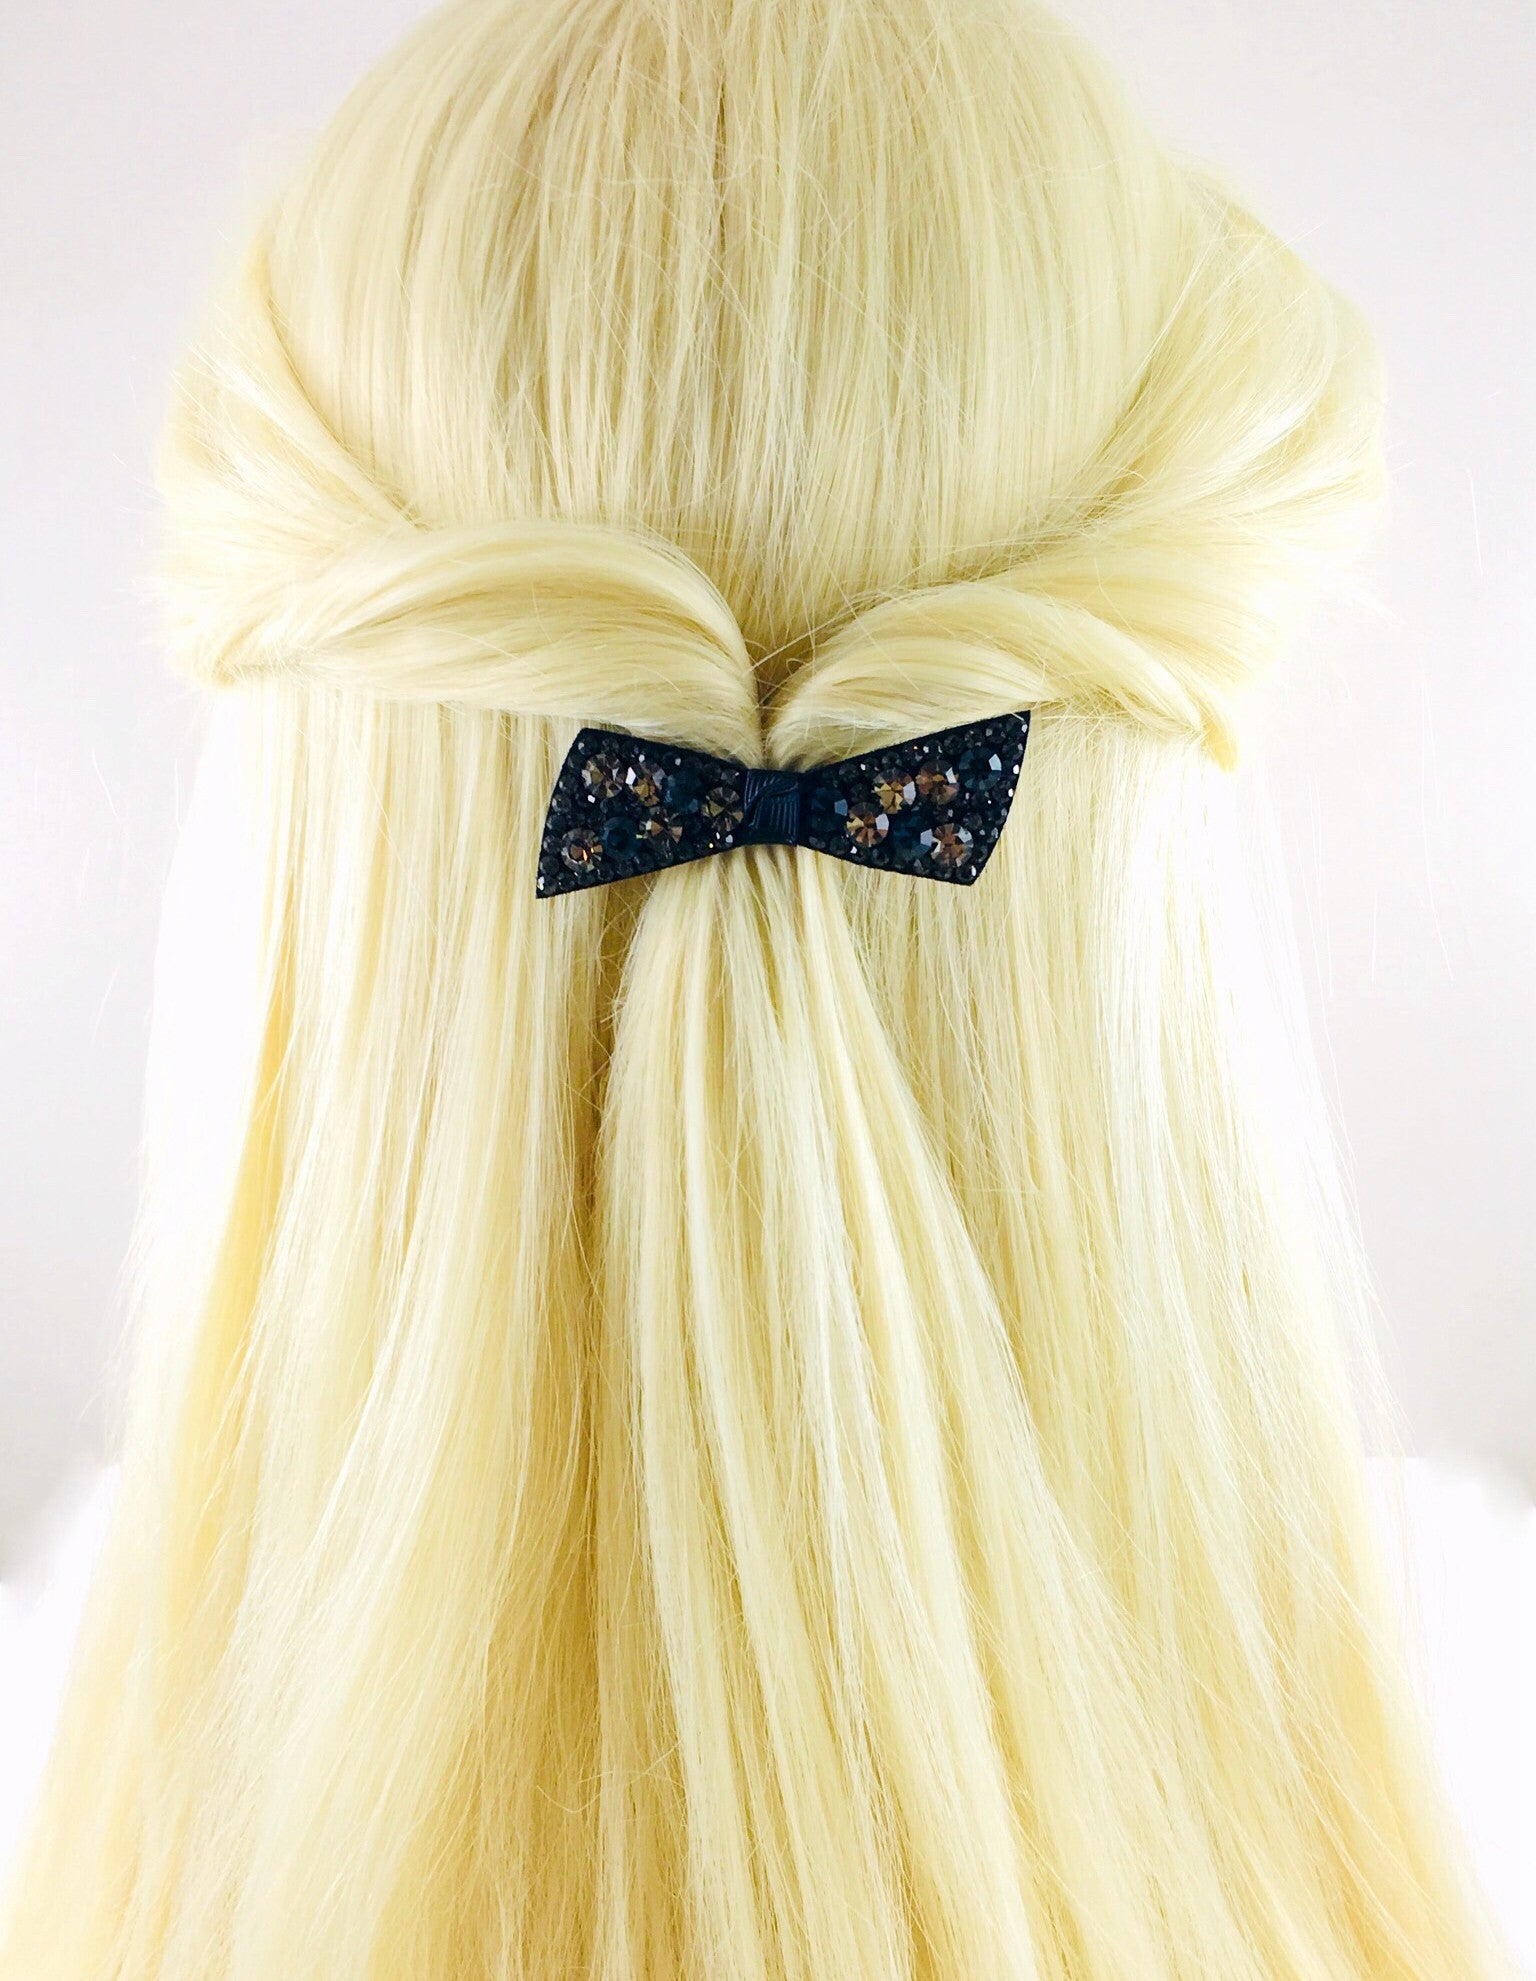 Urban Bow Knot Hair Clip Swarovski Crystal Clamp Acrylic black base Gray Navy Blue, Hair Clip - MOGHANT